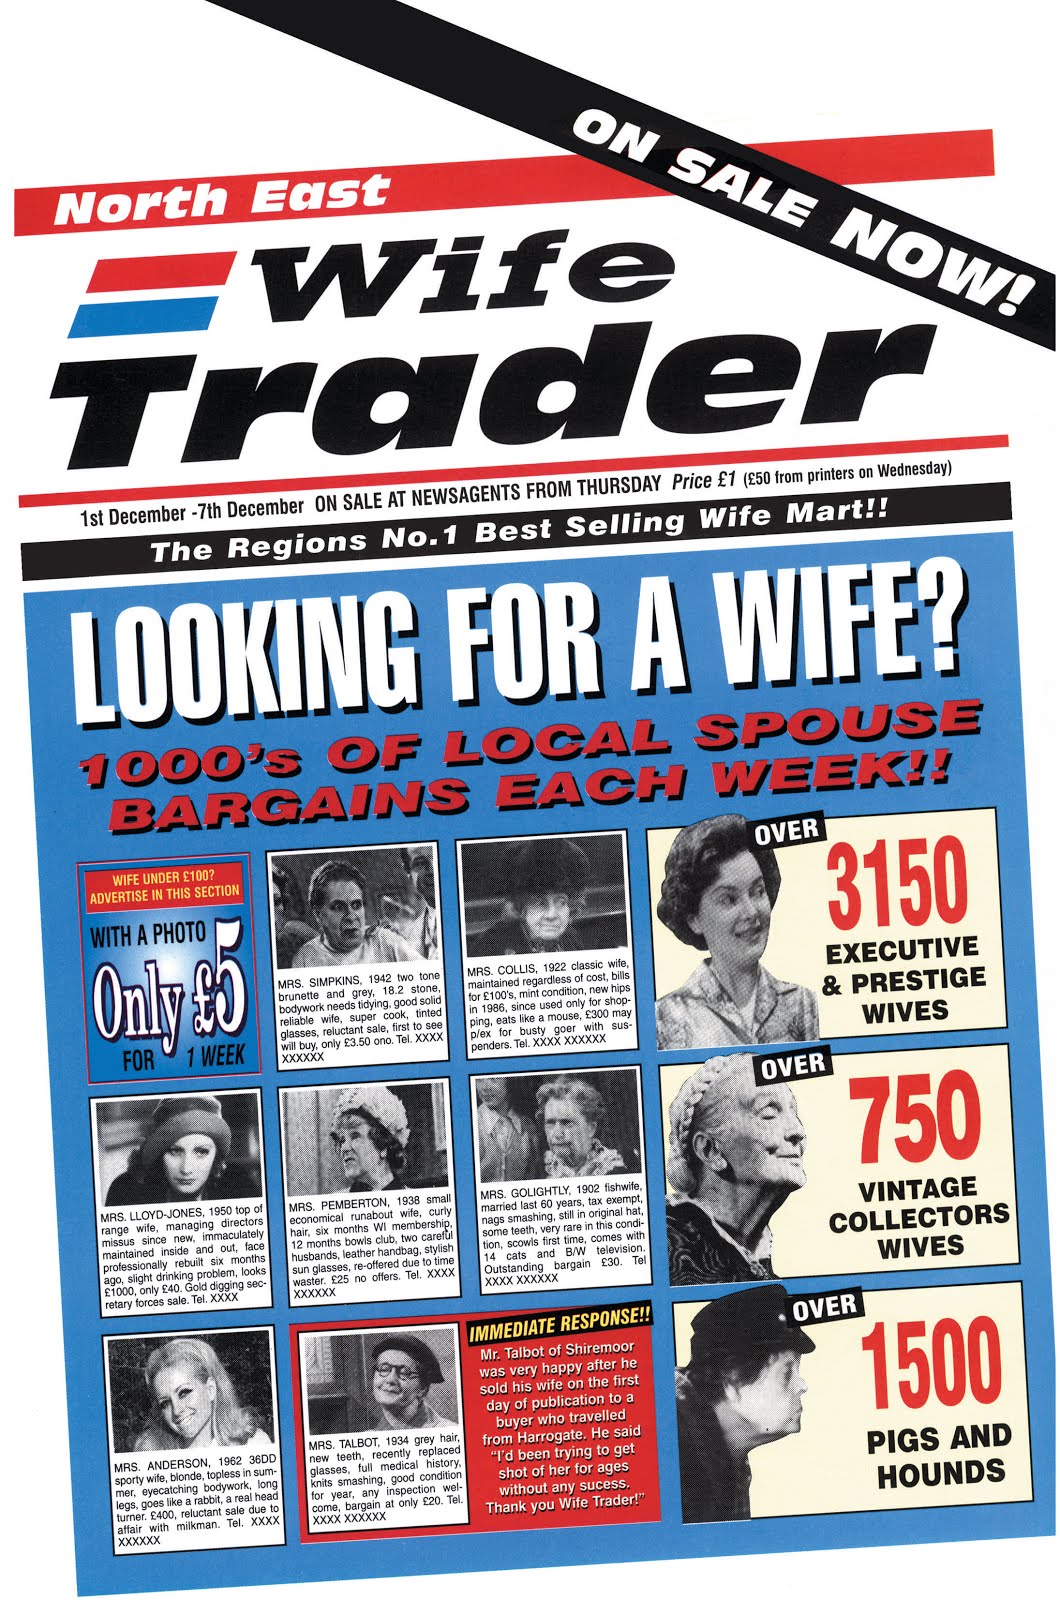 Readers Wives